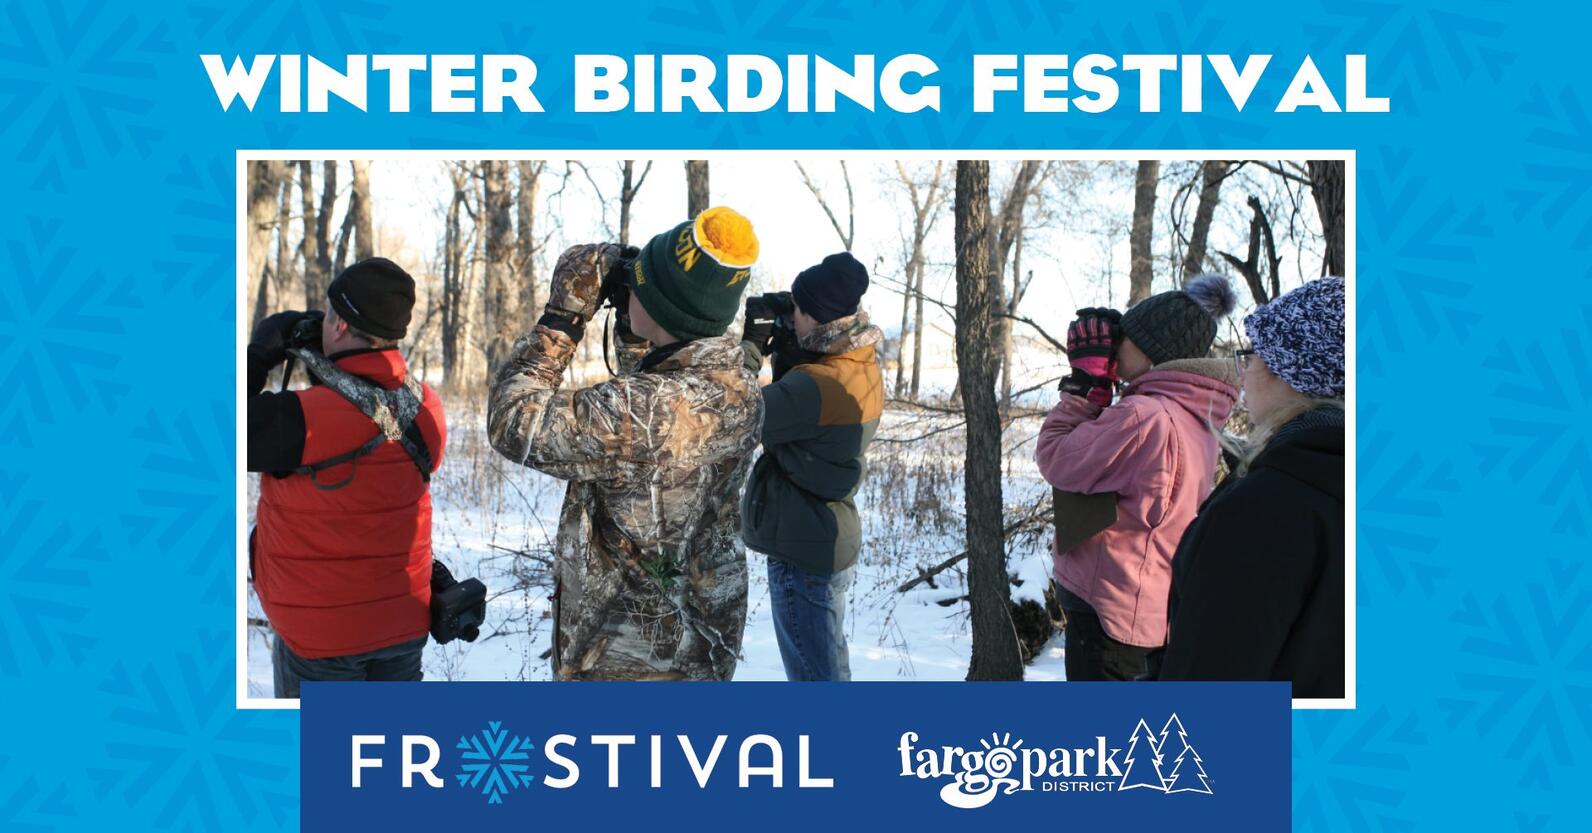 Frostival Winter Birding Festival Banner